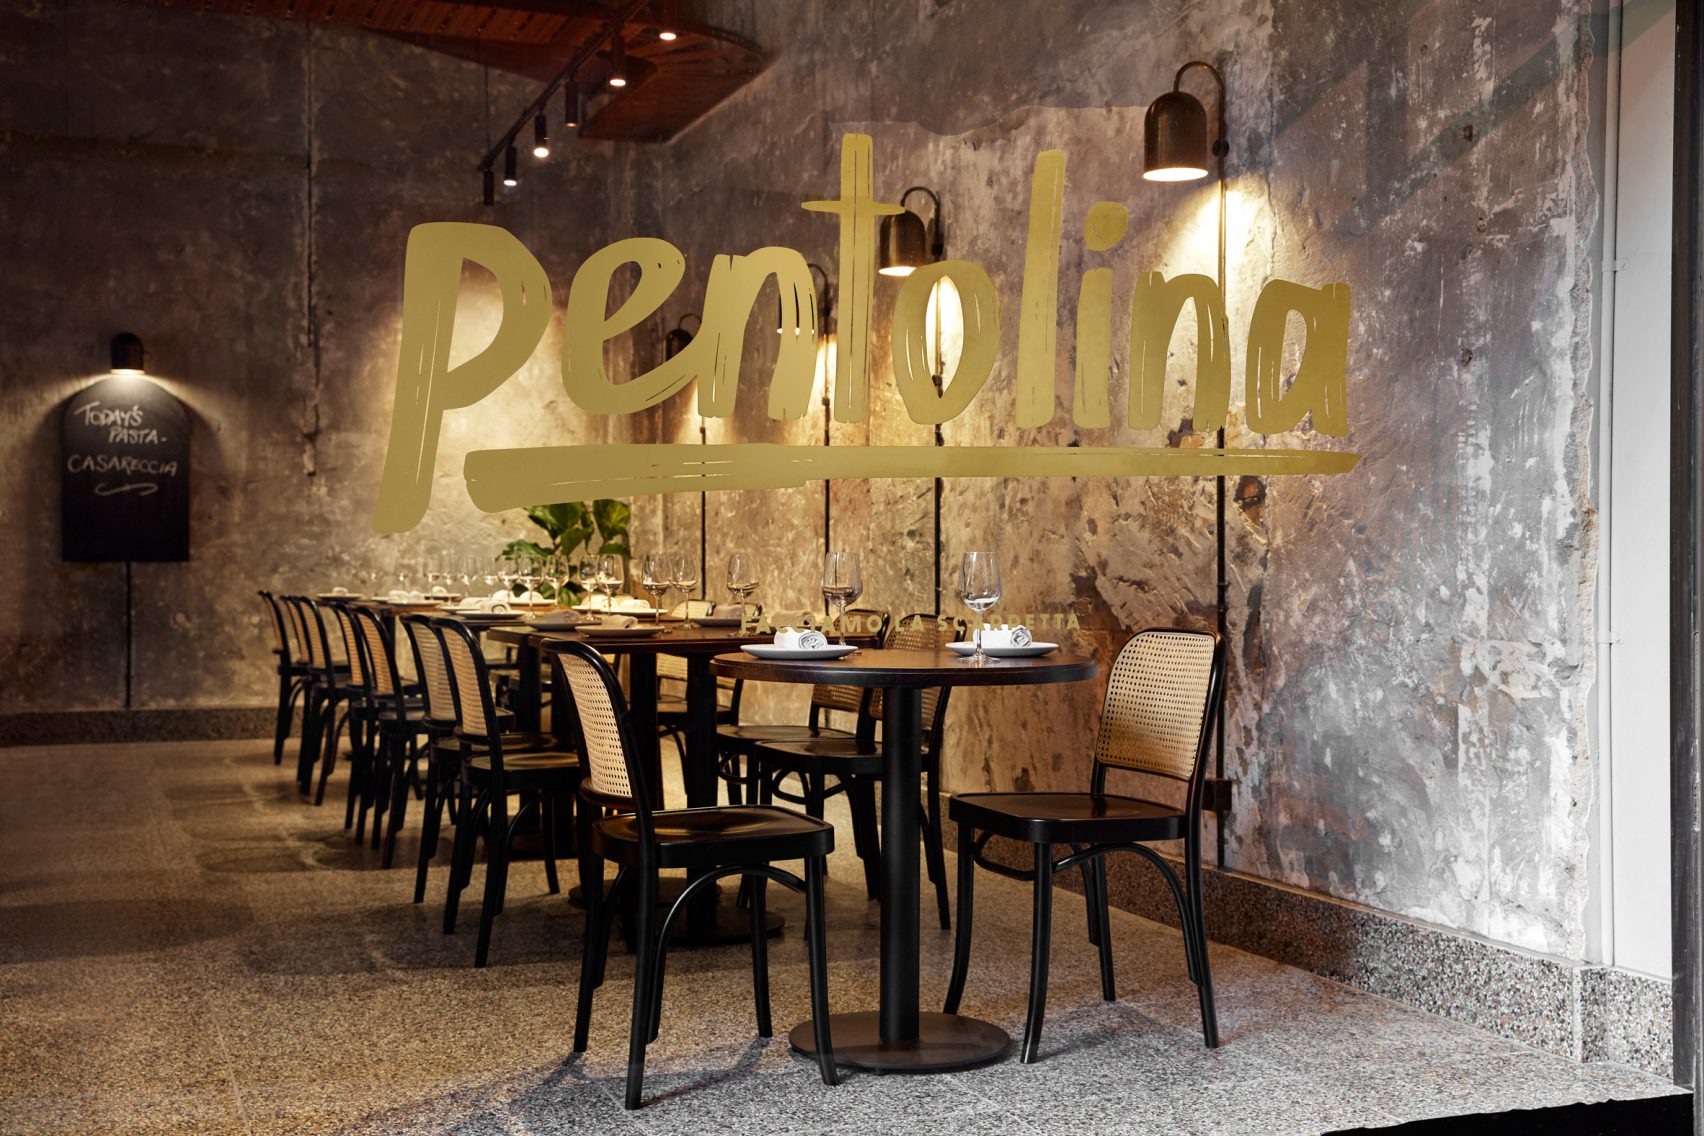 Розовый мрамор и неоднородный бетон подражают архитектуре Древнего Рима в паста-баре «Pentolina» в Мельбурне